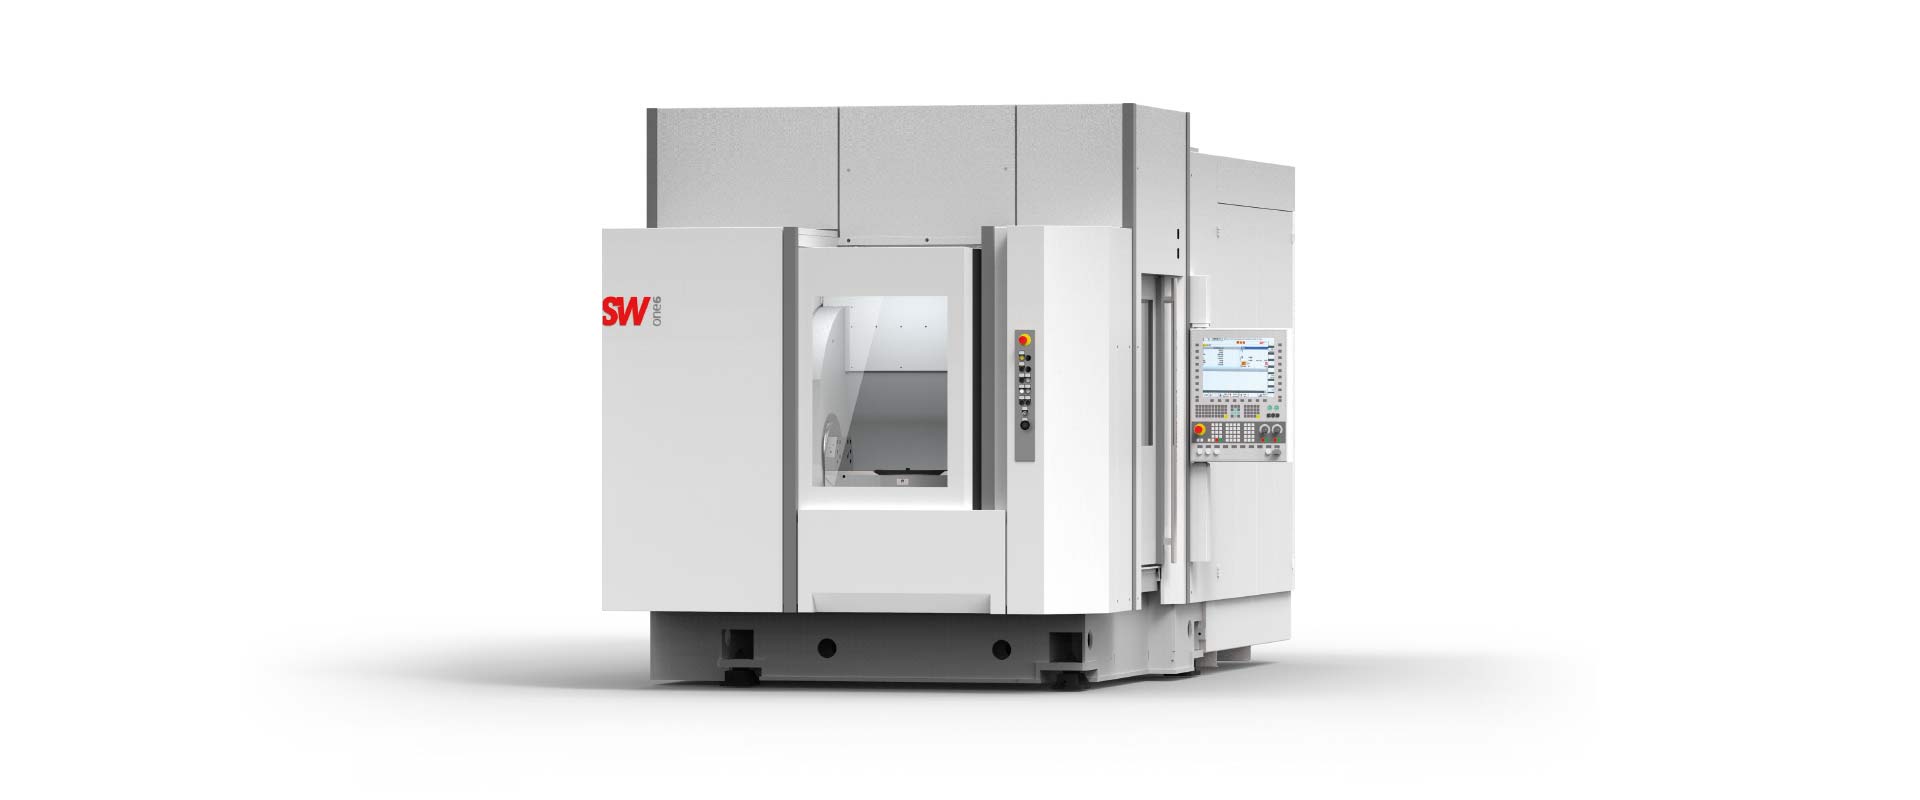 BA one6 | SW Swabian machine tools